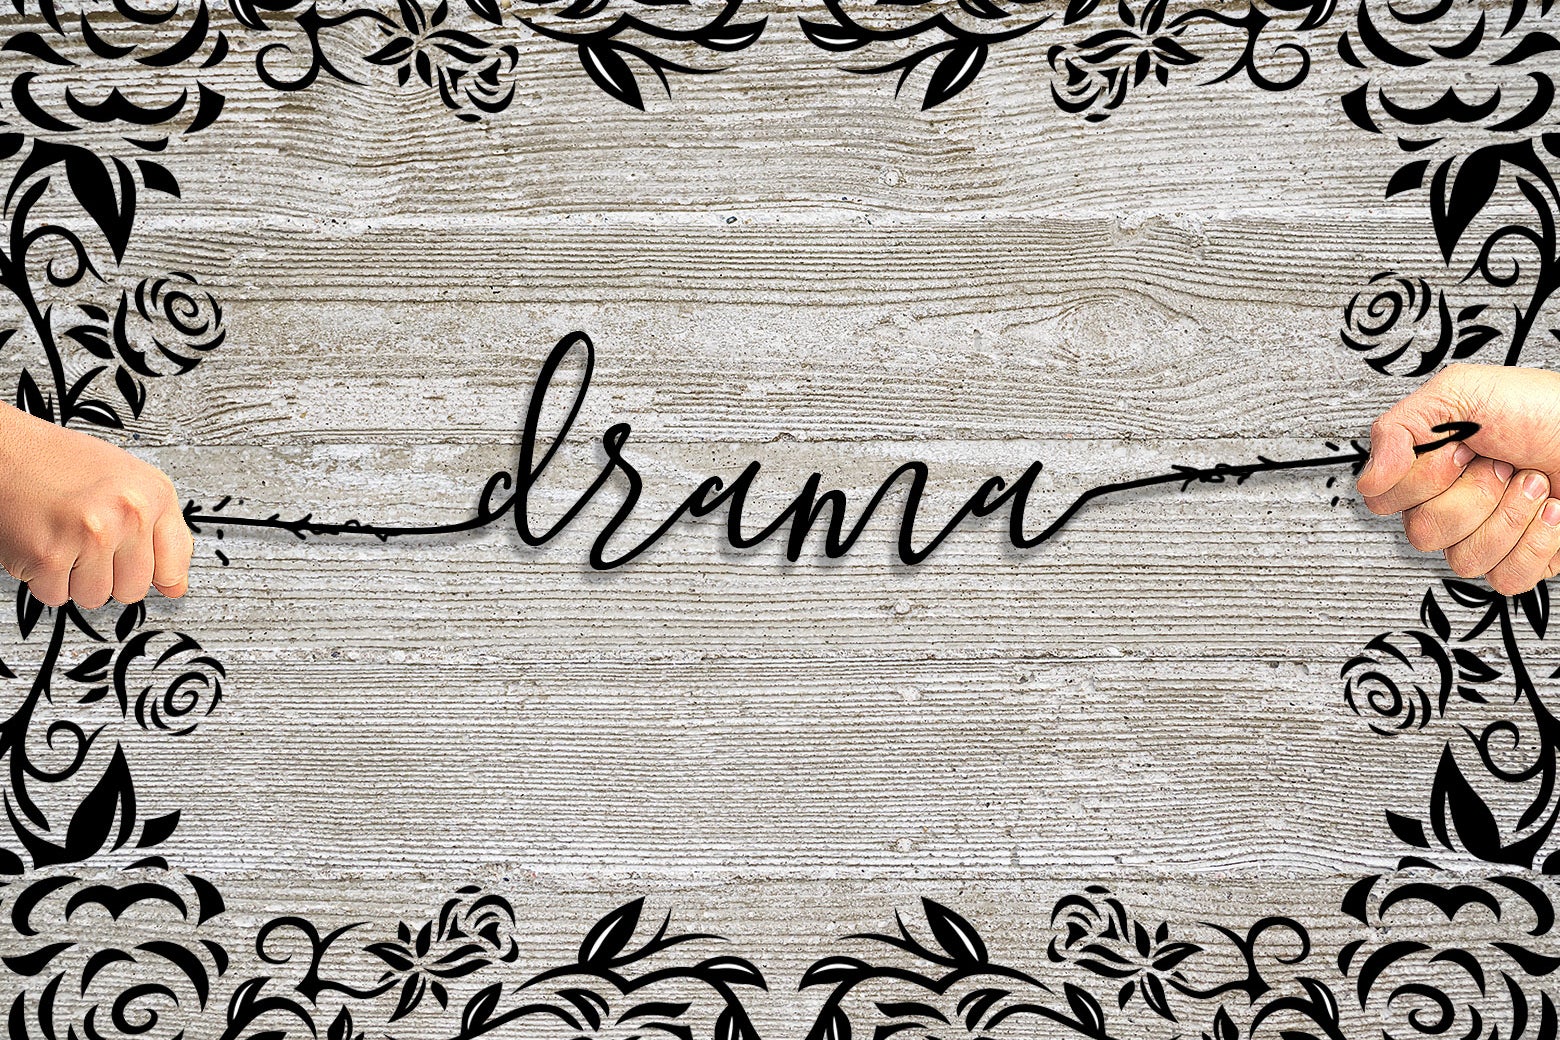 The word "drama" spelled in Blooming Elegant.